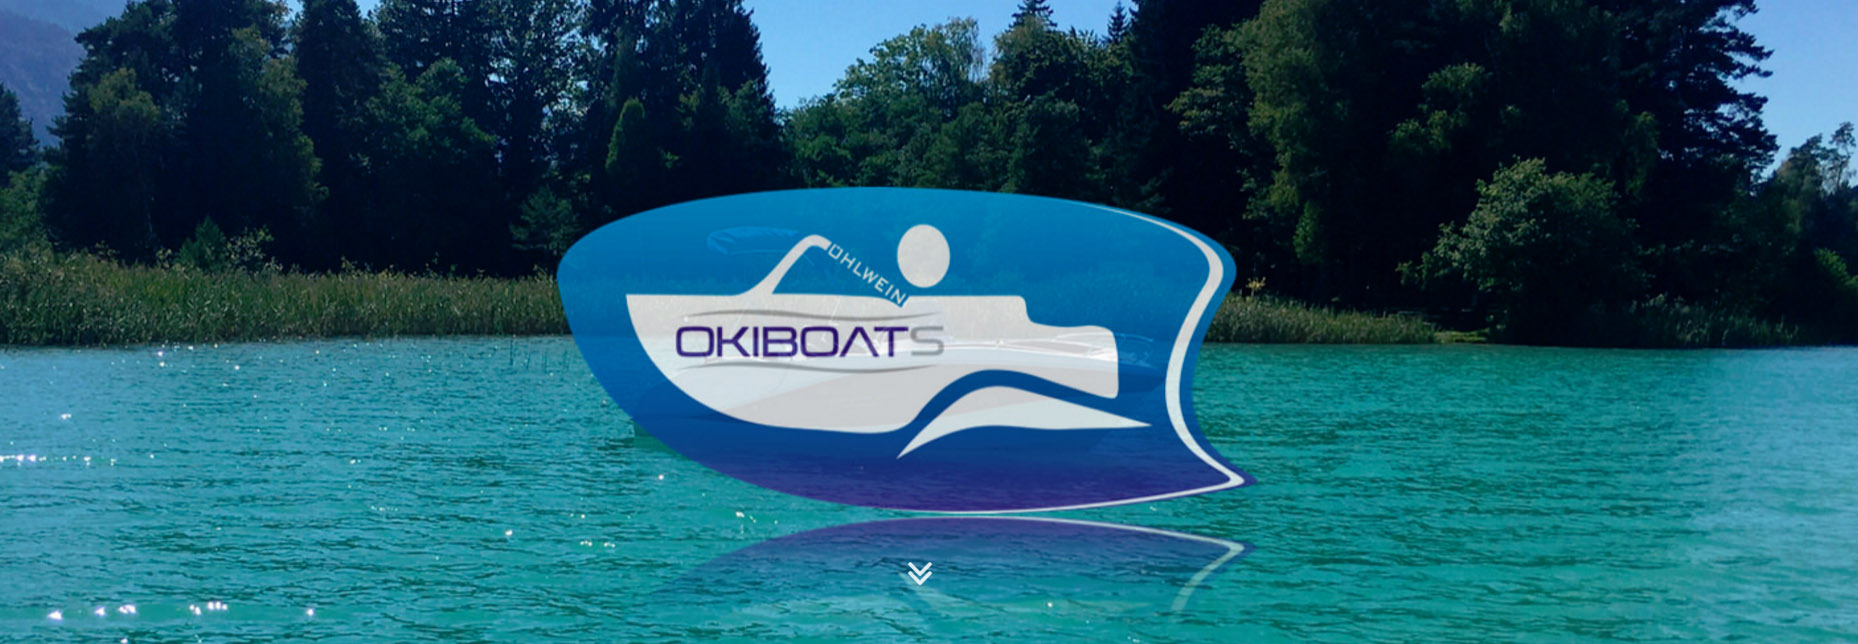 OkiBoats header 1